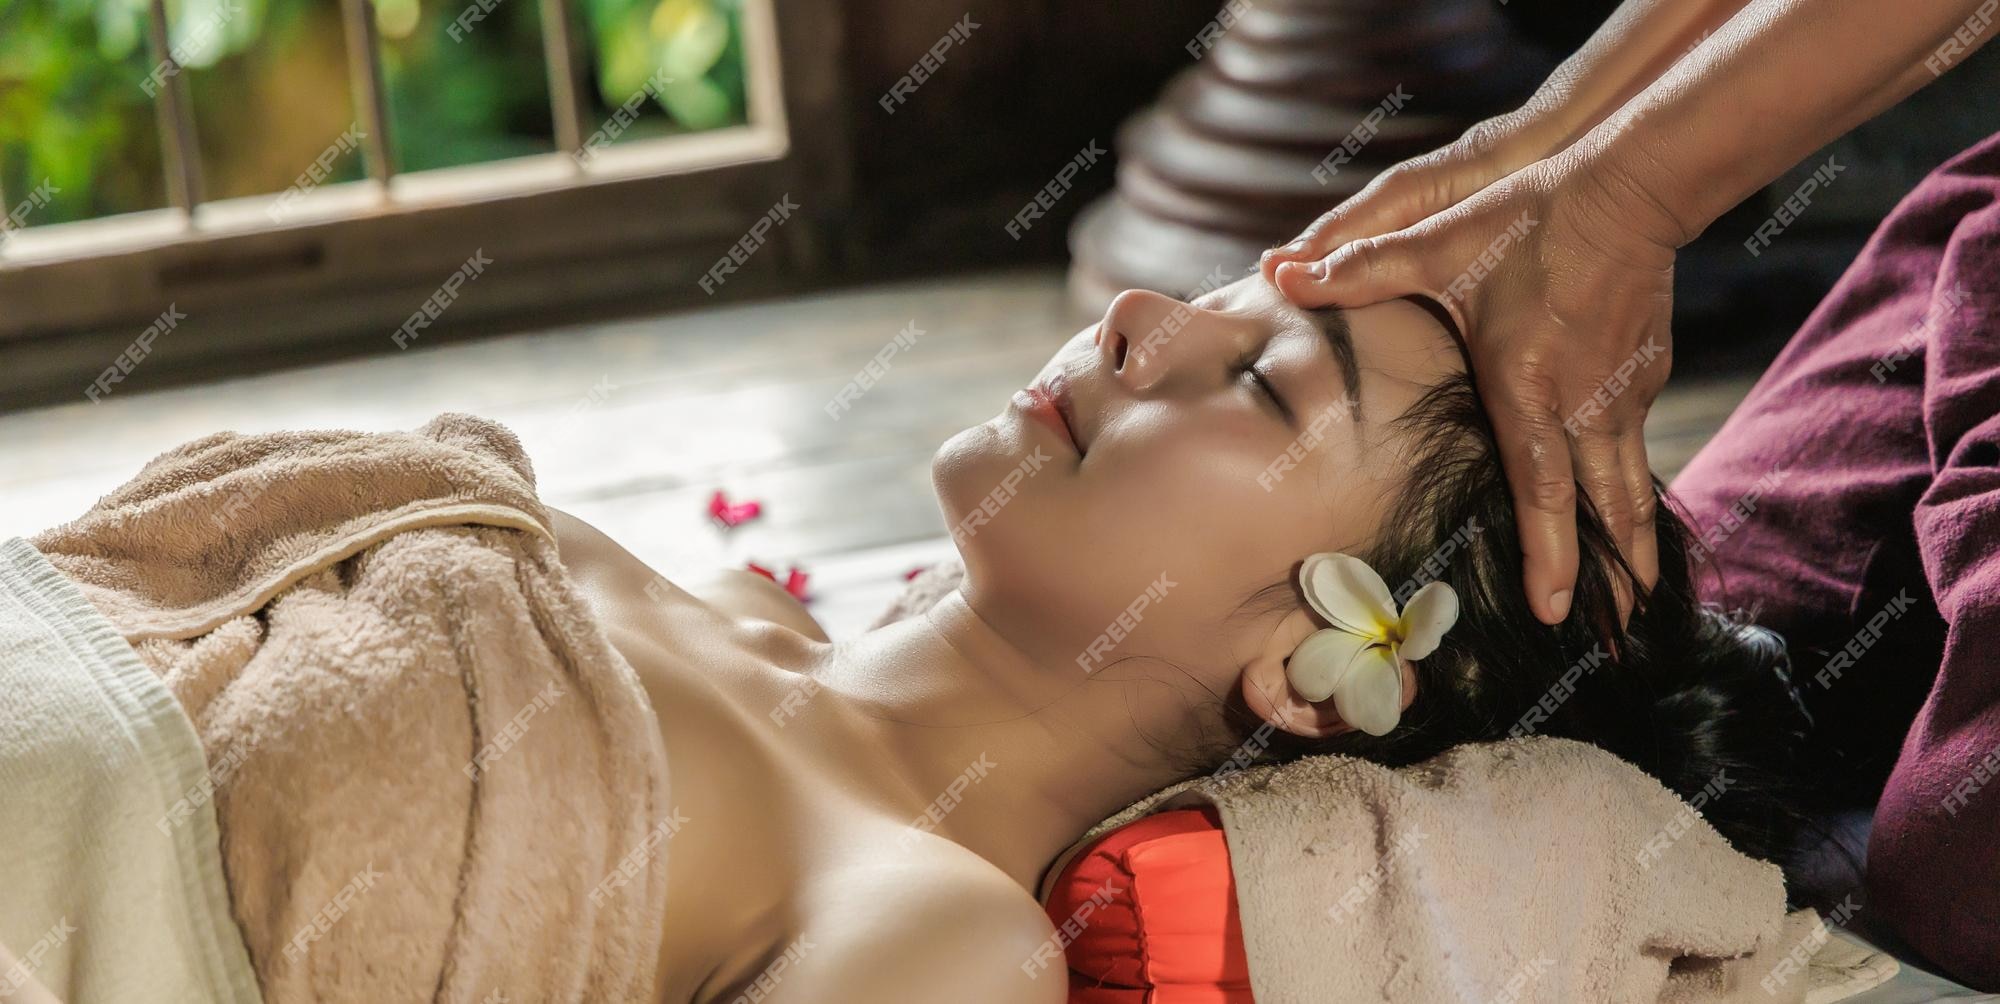 camilo rincon recommends real asian massage tube pic